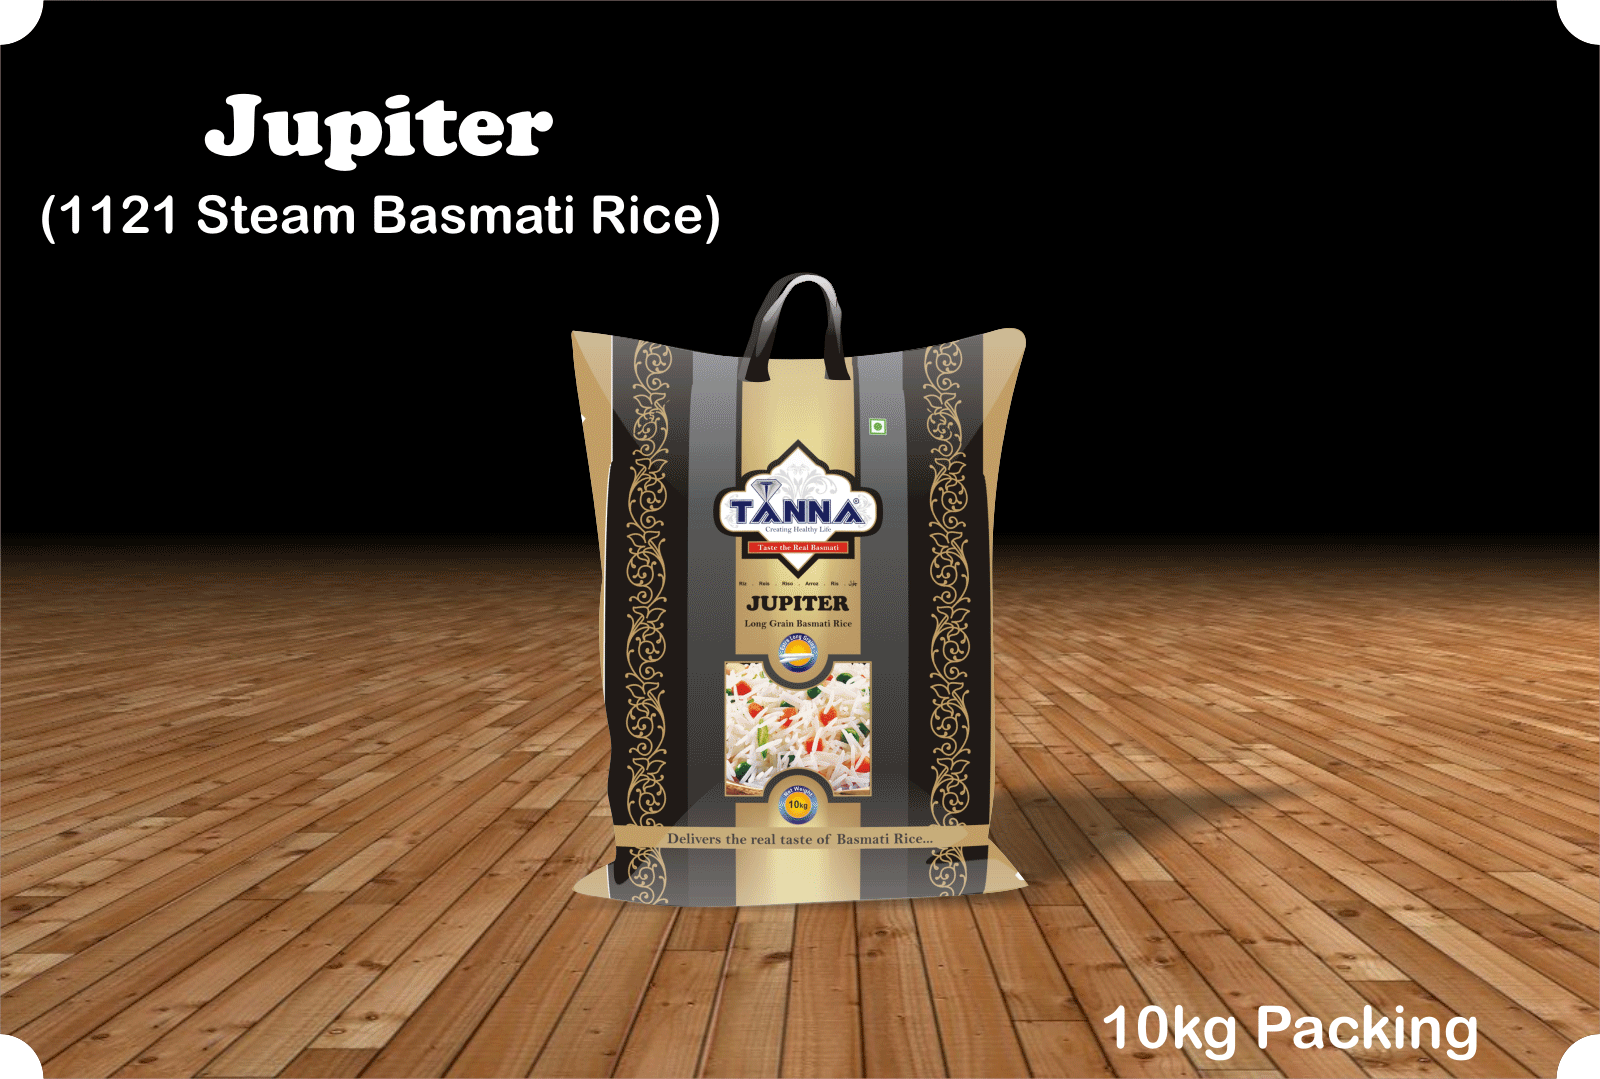 Tanna Jupiter Steam Basmati Rice